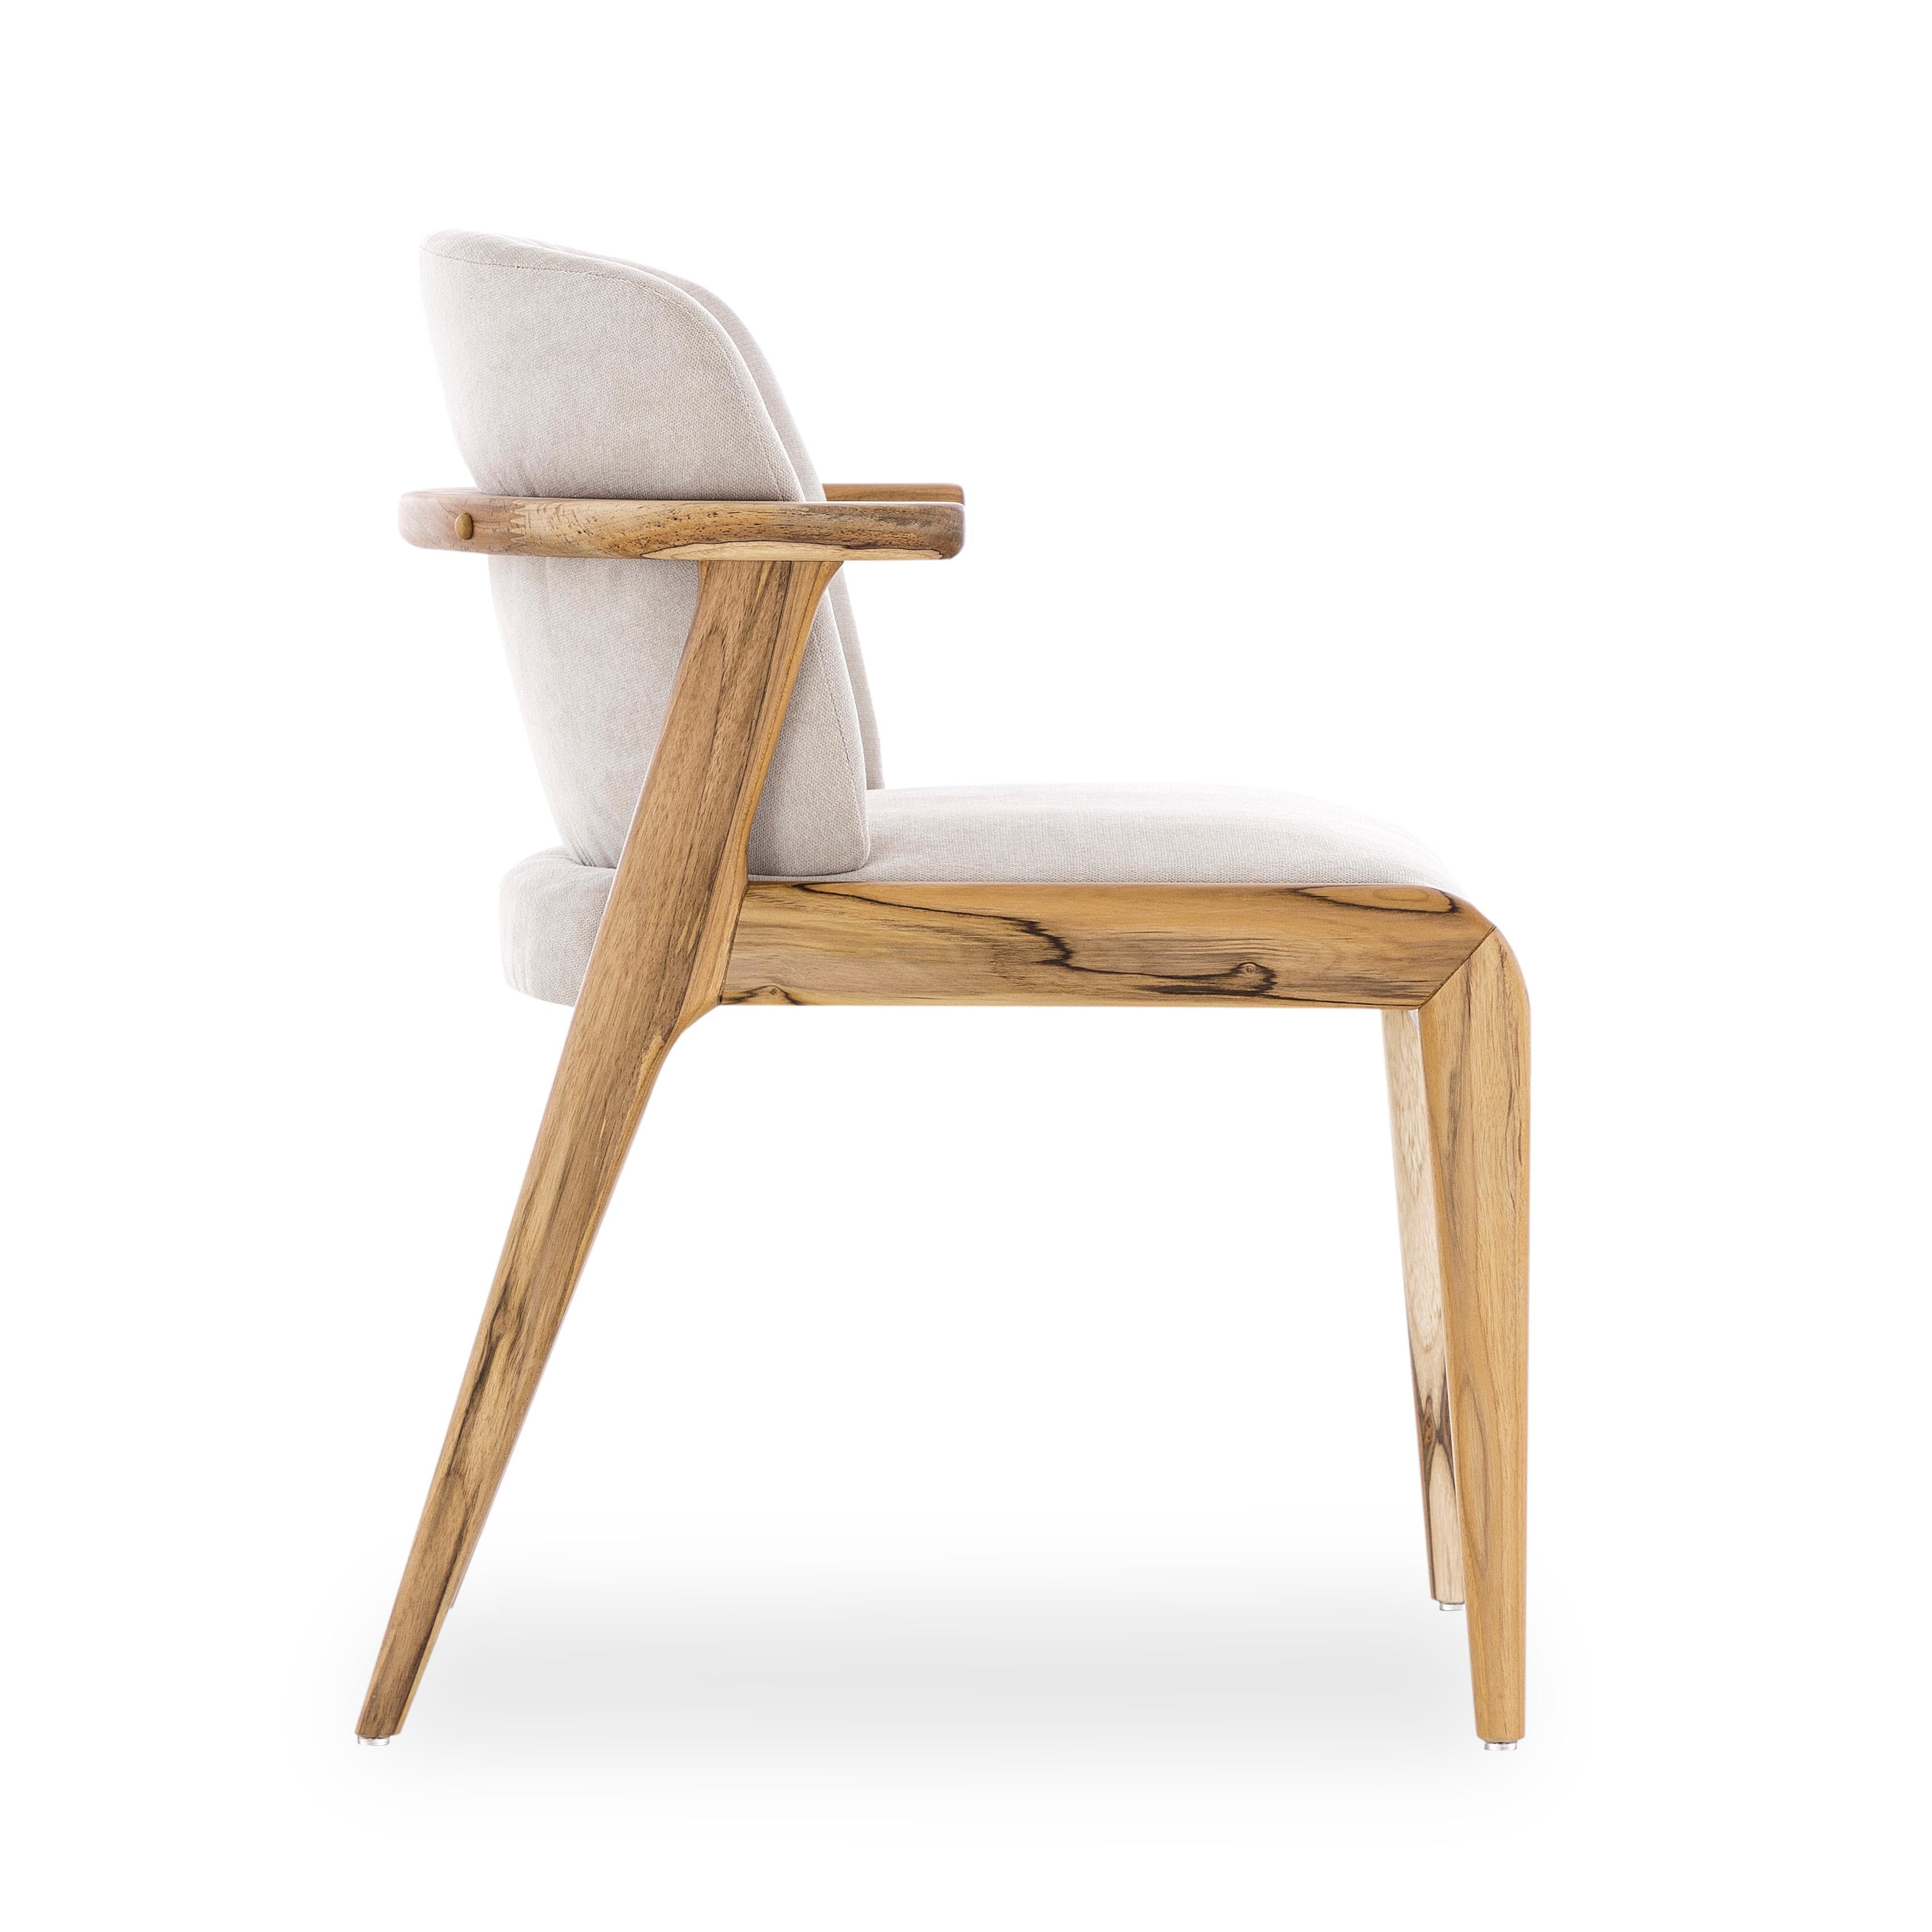 L'équipe créative de Uultis a créé cette chaise de salle à manger pour embellir cet espace familial avec un cadre et des pieds qui sont en bois dans une finition en teck, en le combinant avec un beau tissu en coton beige. Il s'agit d'une chaise